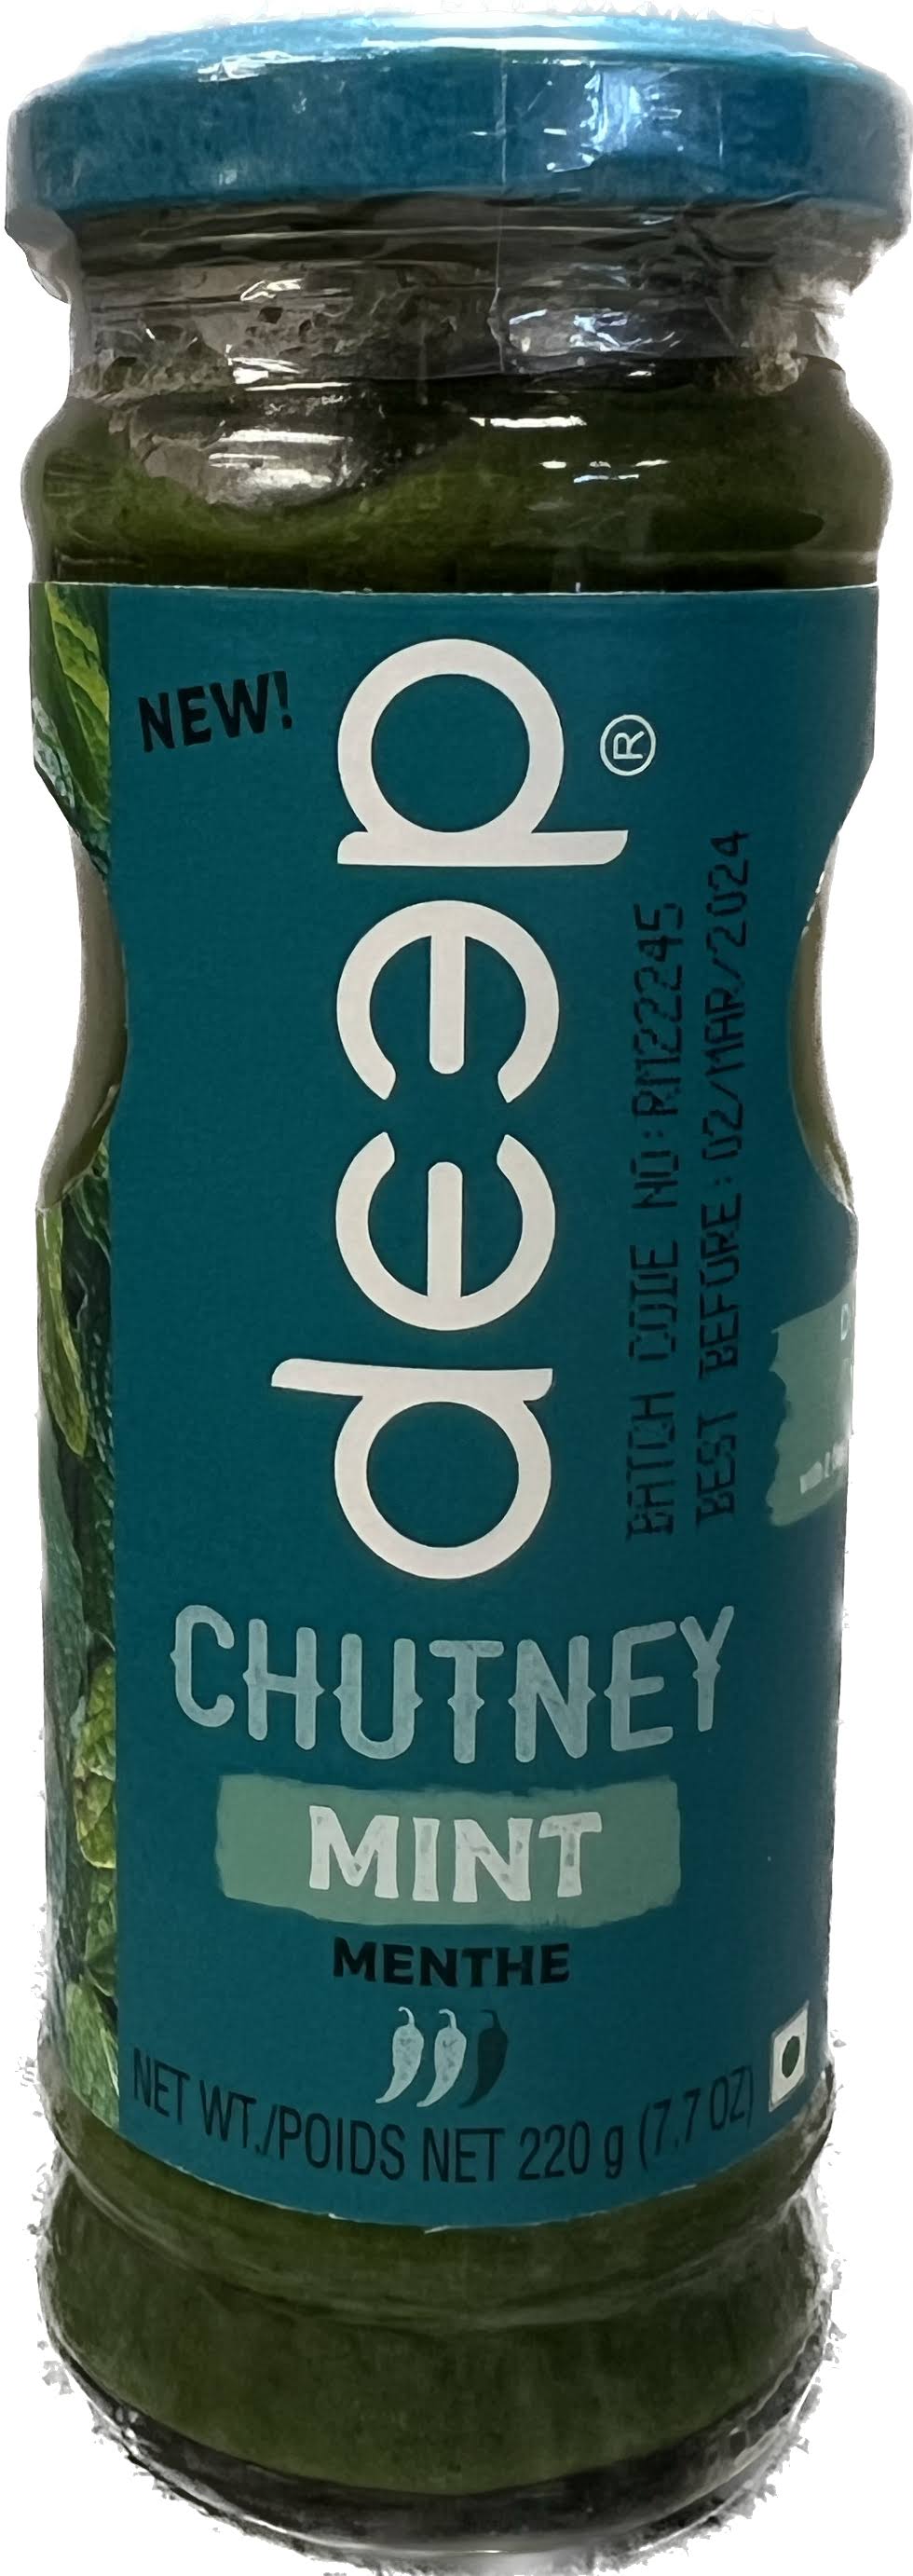 Deep Mint Chutney 7.7 oz